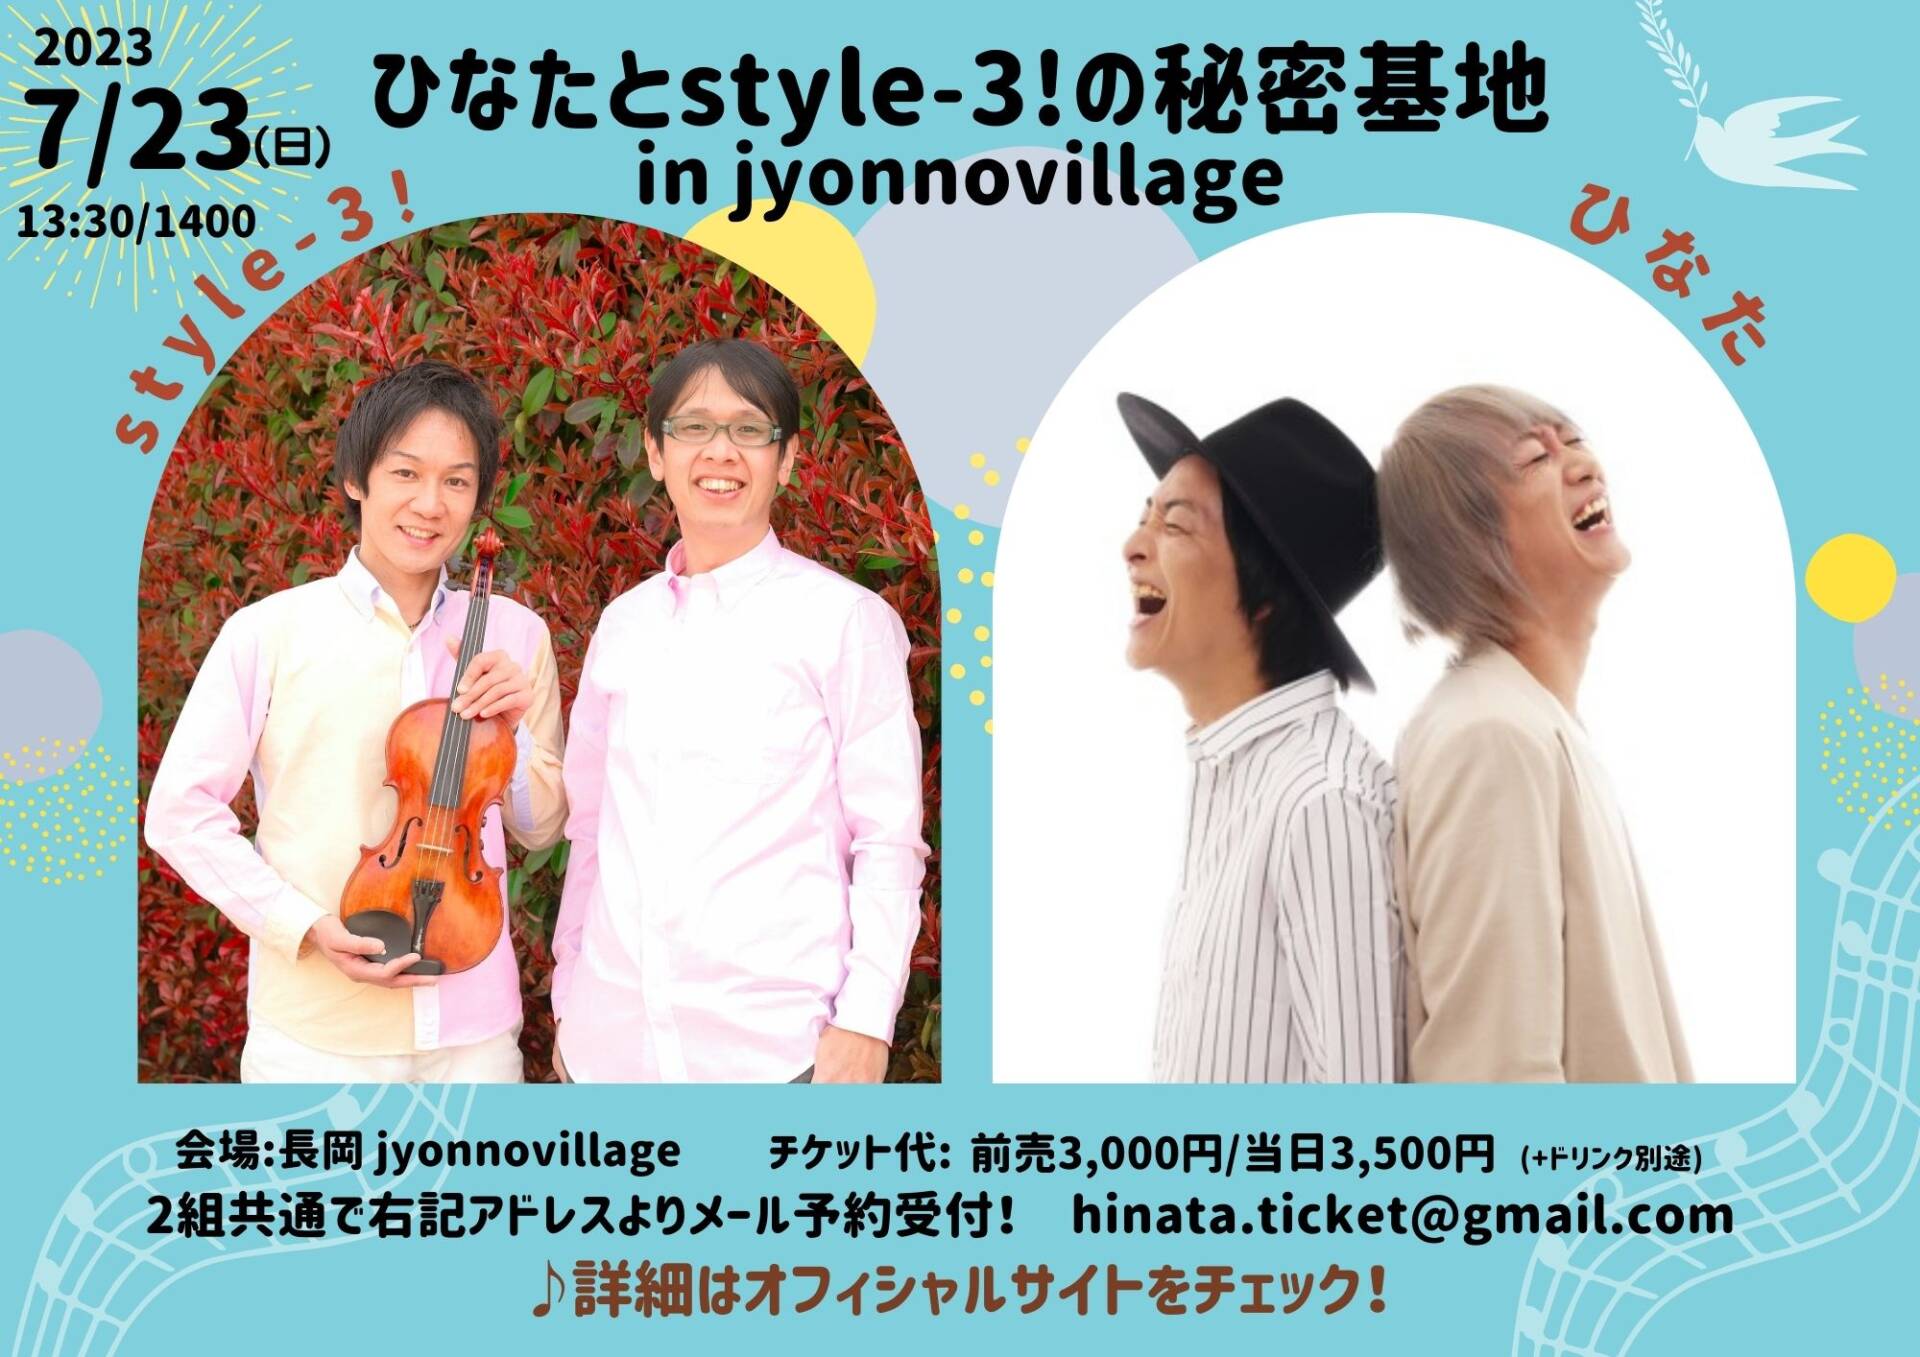 ひなたとstyle-3! の秘密基地 in jyonnovillage – HINATA official